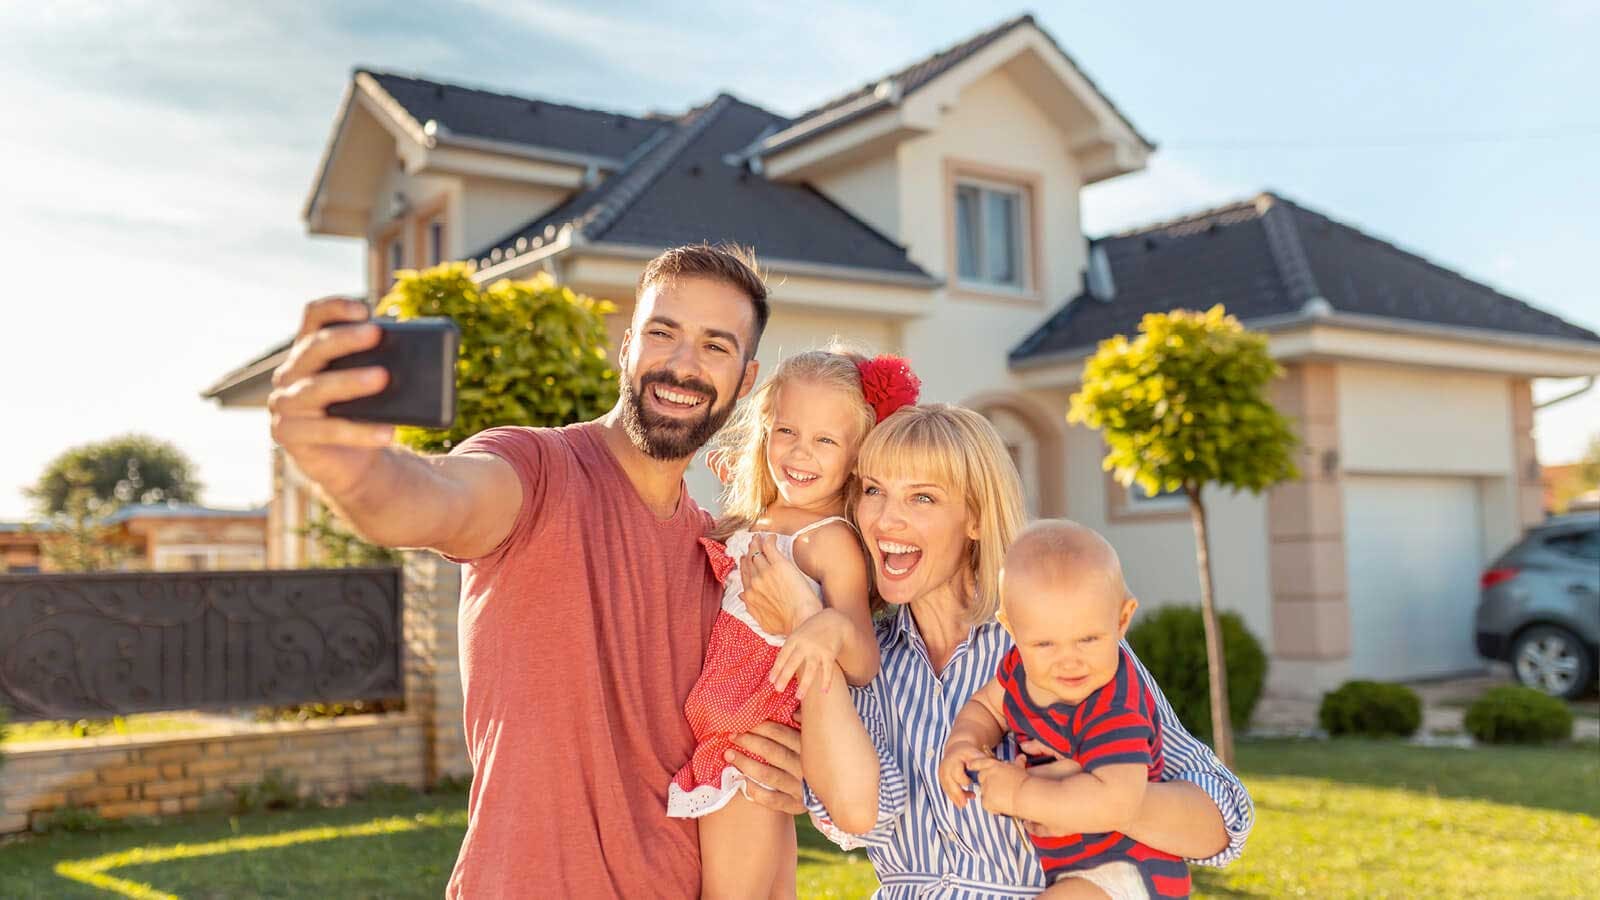 img. 1: "Famiglia festeggia acquisto prima casa con un selfie in giardino"